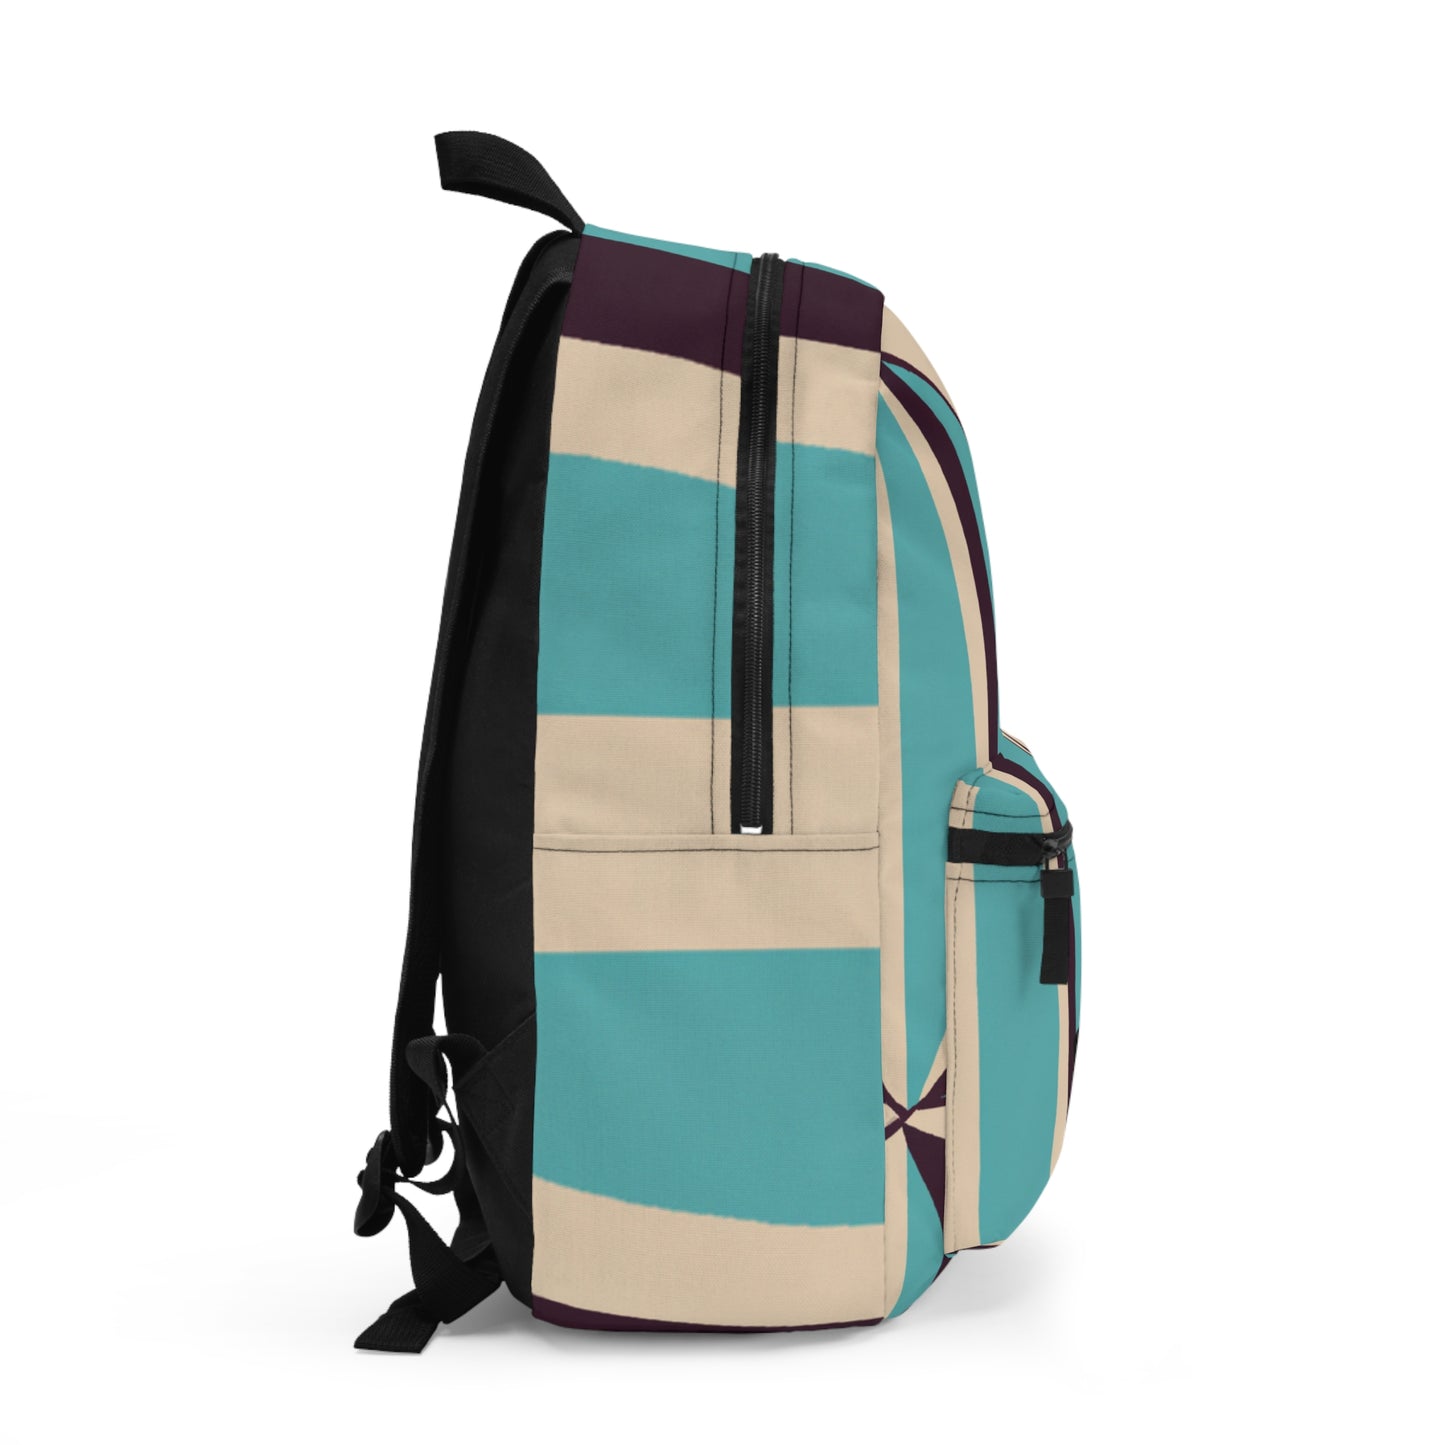 Barbella Blosseau Backpack